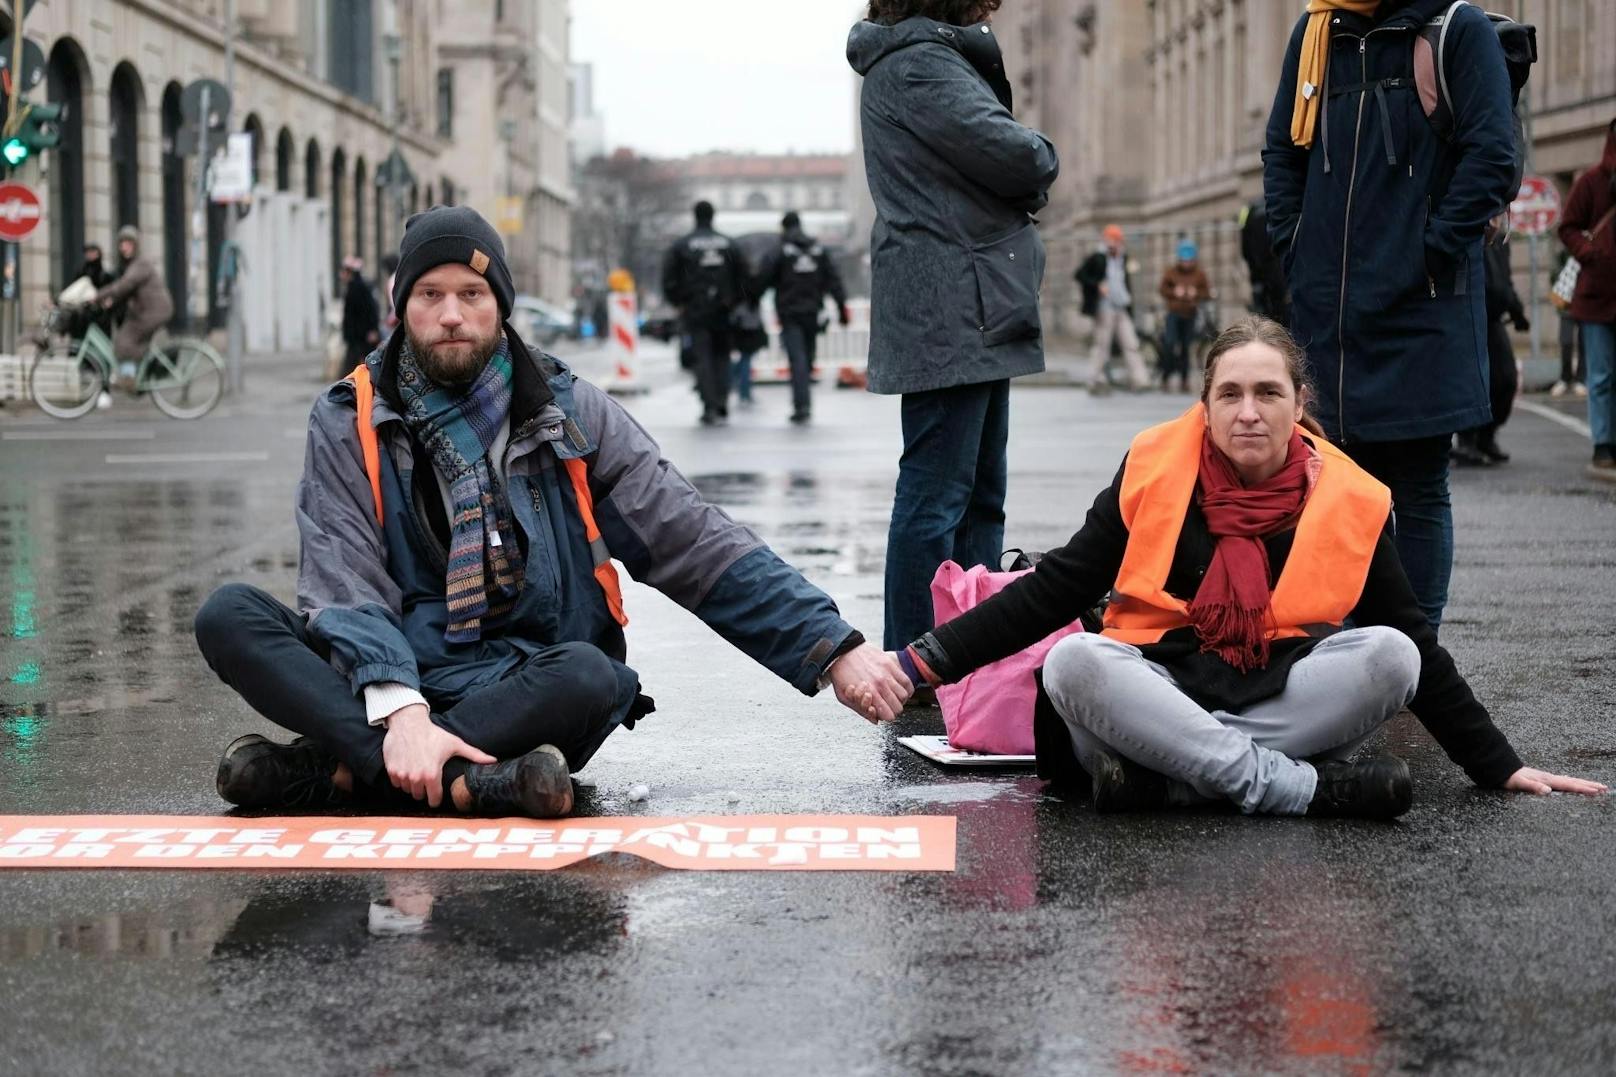 Bilder einer Straßenblockade der "Letzten Generation" in Berlin am 17. Februar 2023.